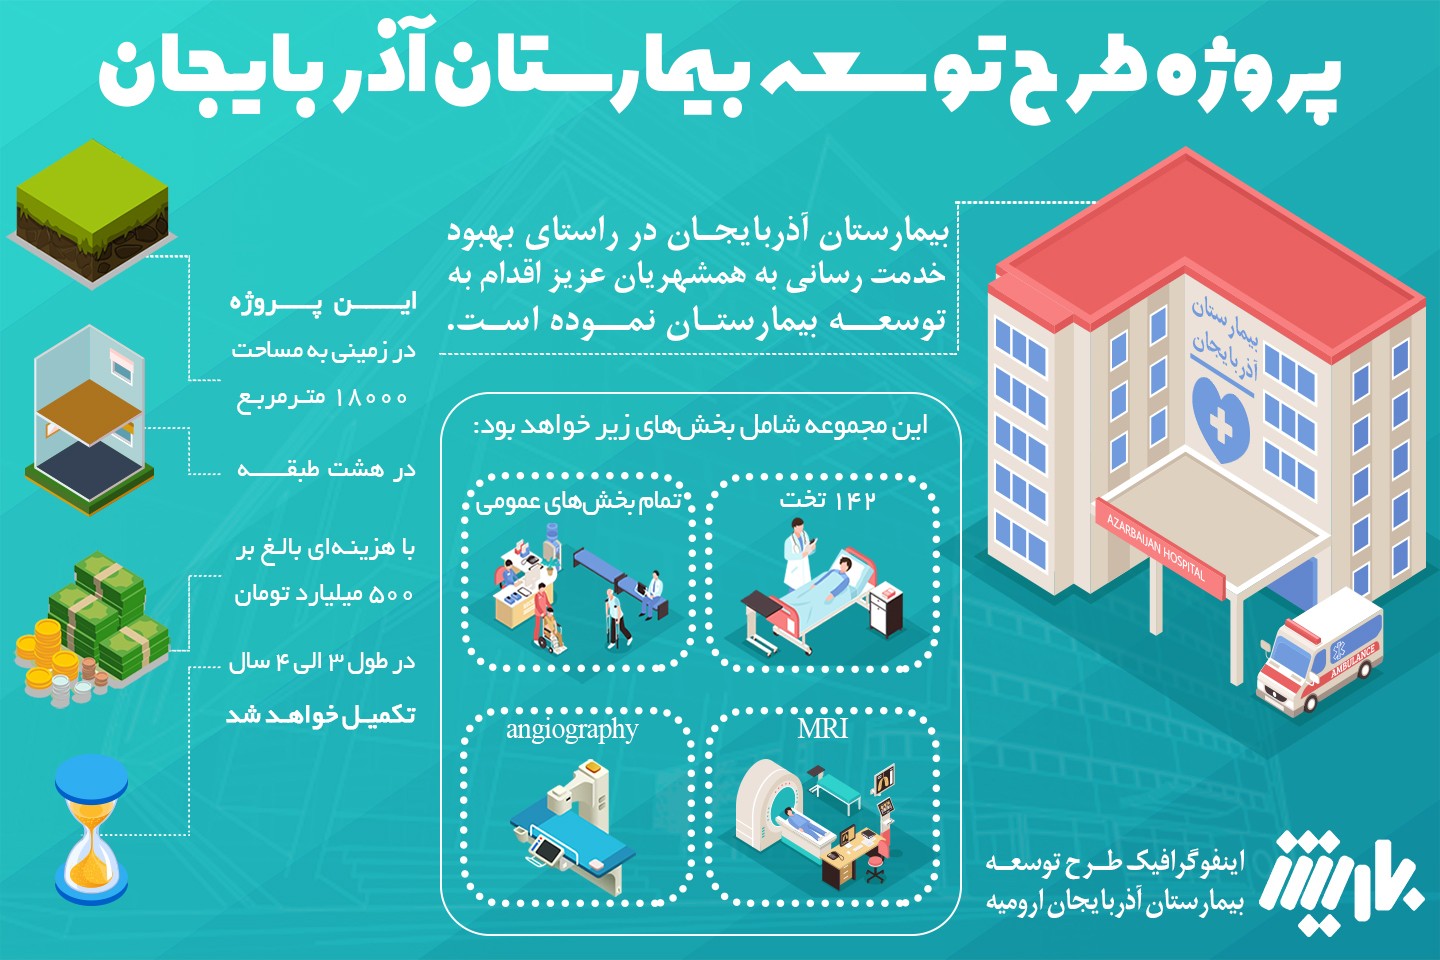 اینفوگرافیک طرح توسعه بیمارستان آذربایجان ارومیه